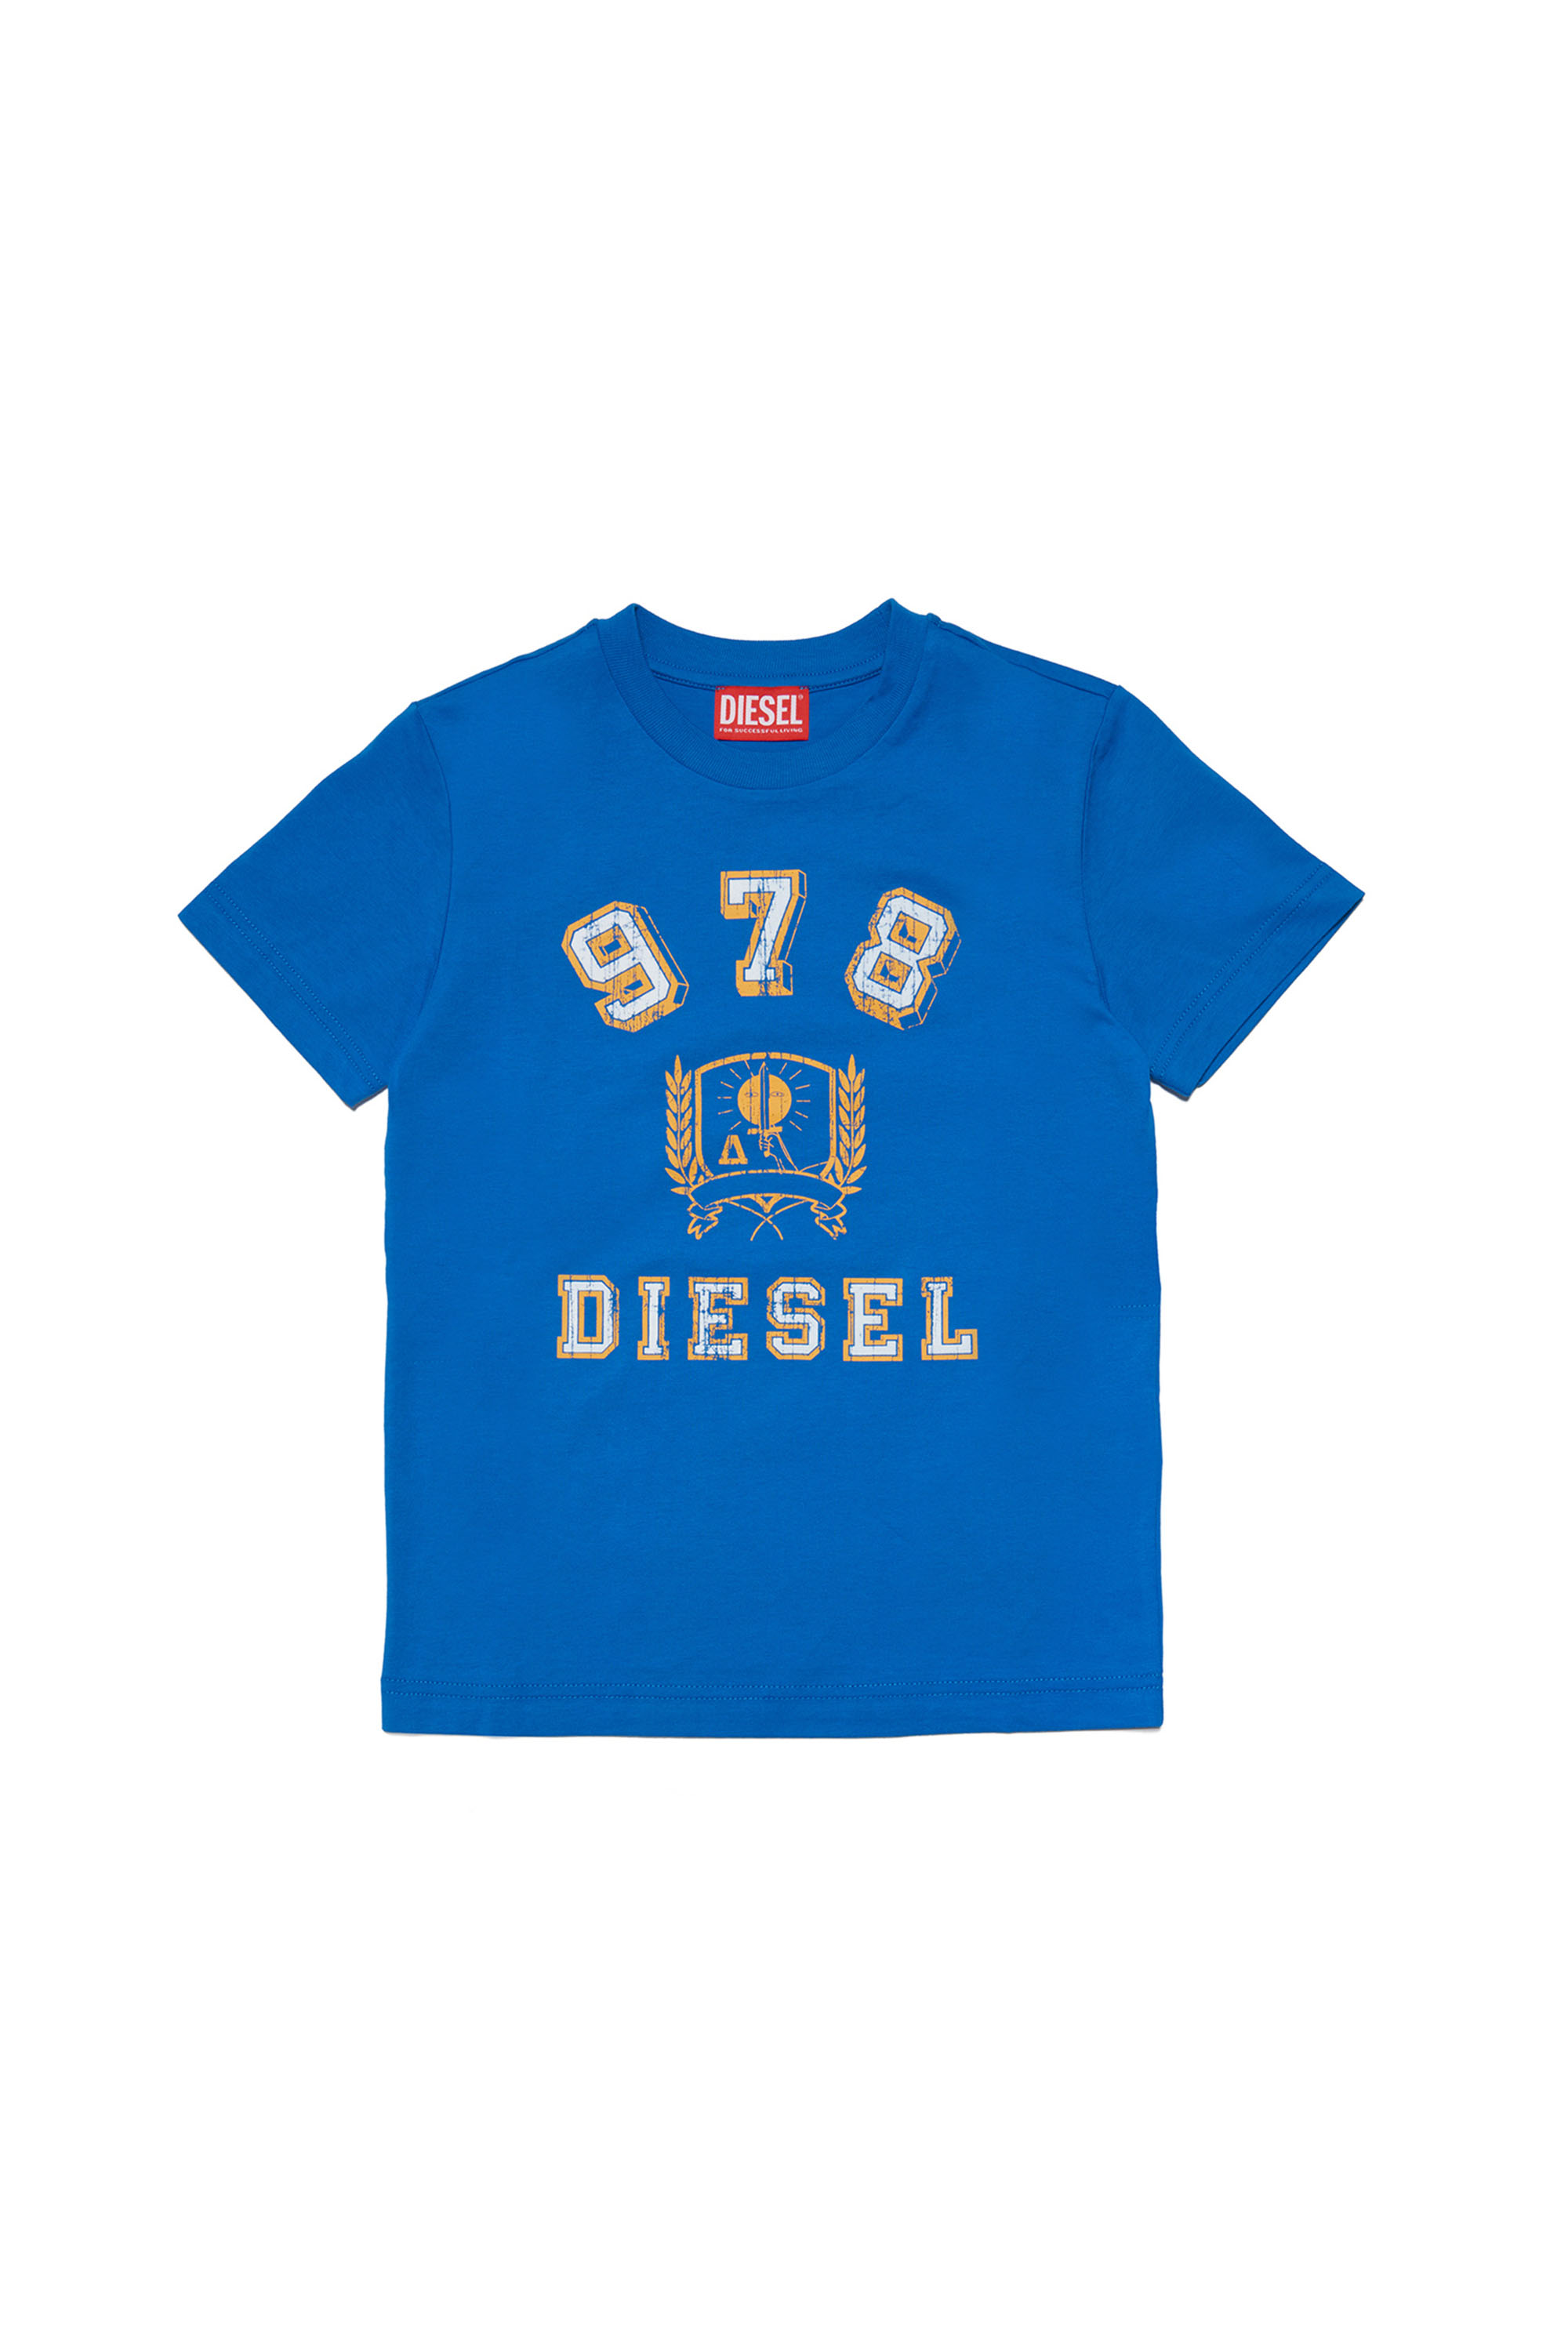 Diesel - TDIEGORE11, Blau - Image 1